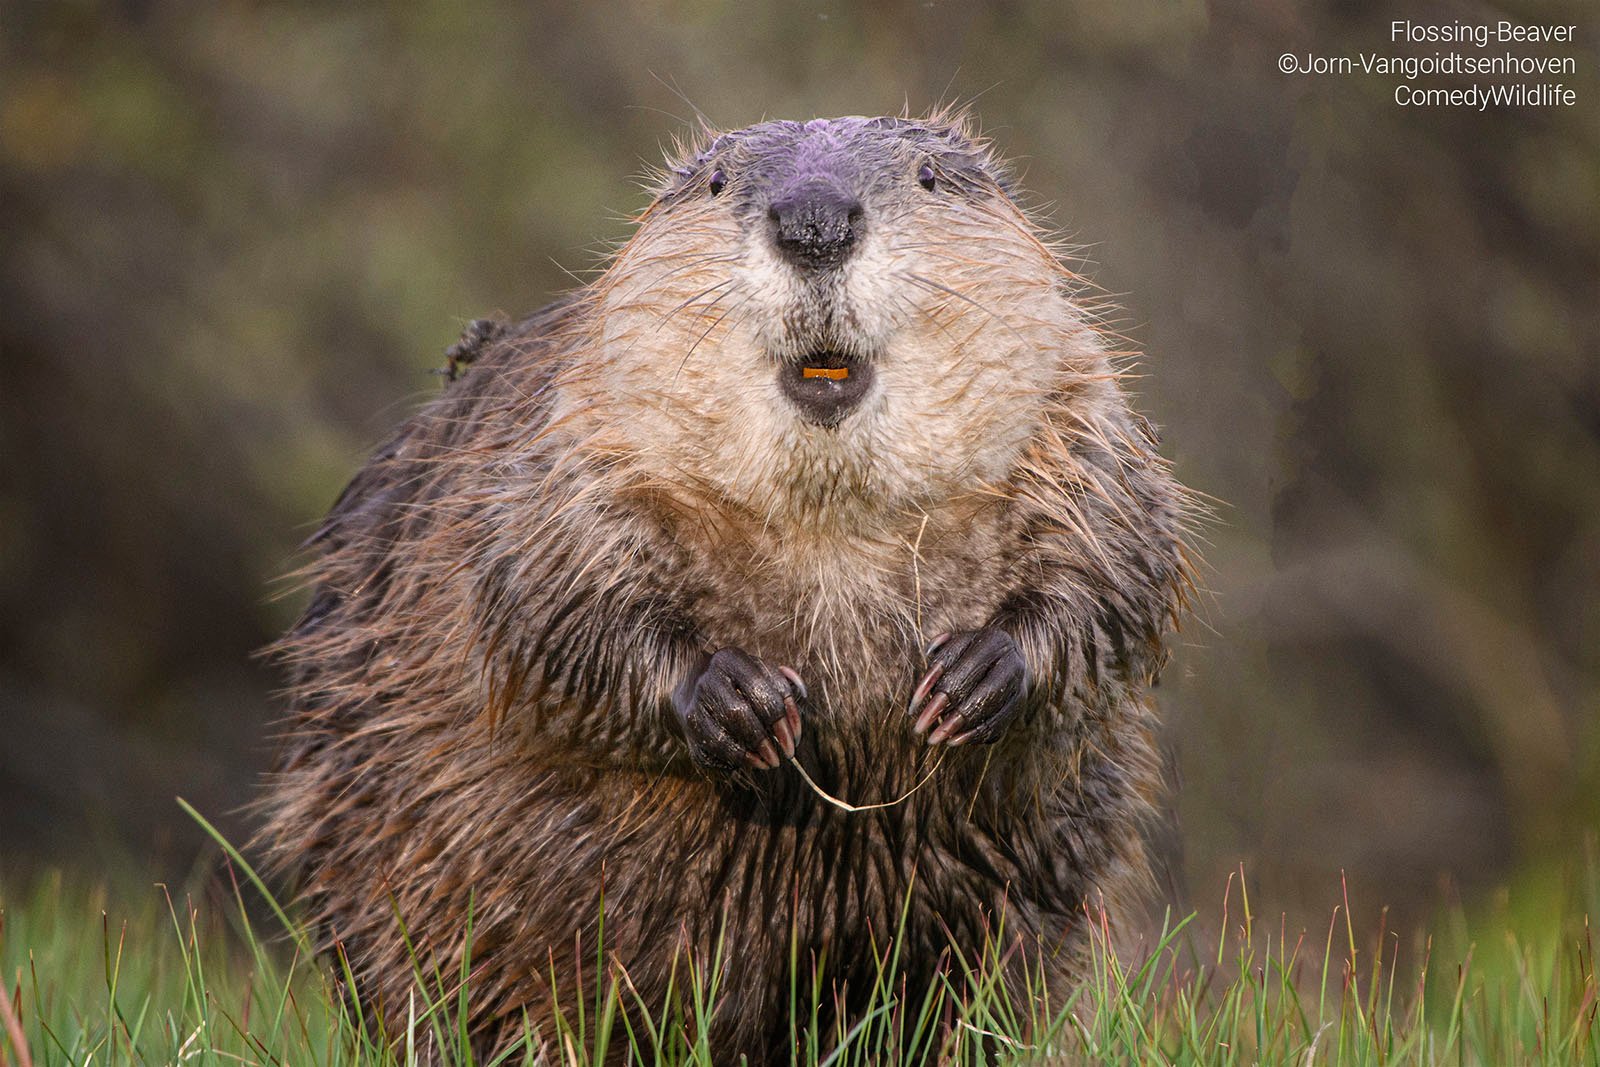 A beaver flosses at the camera.